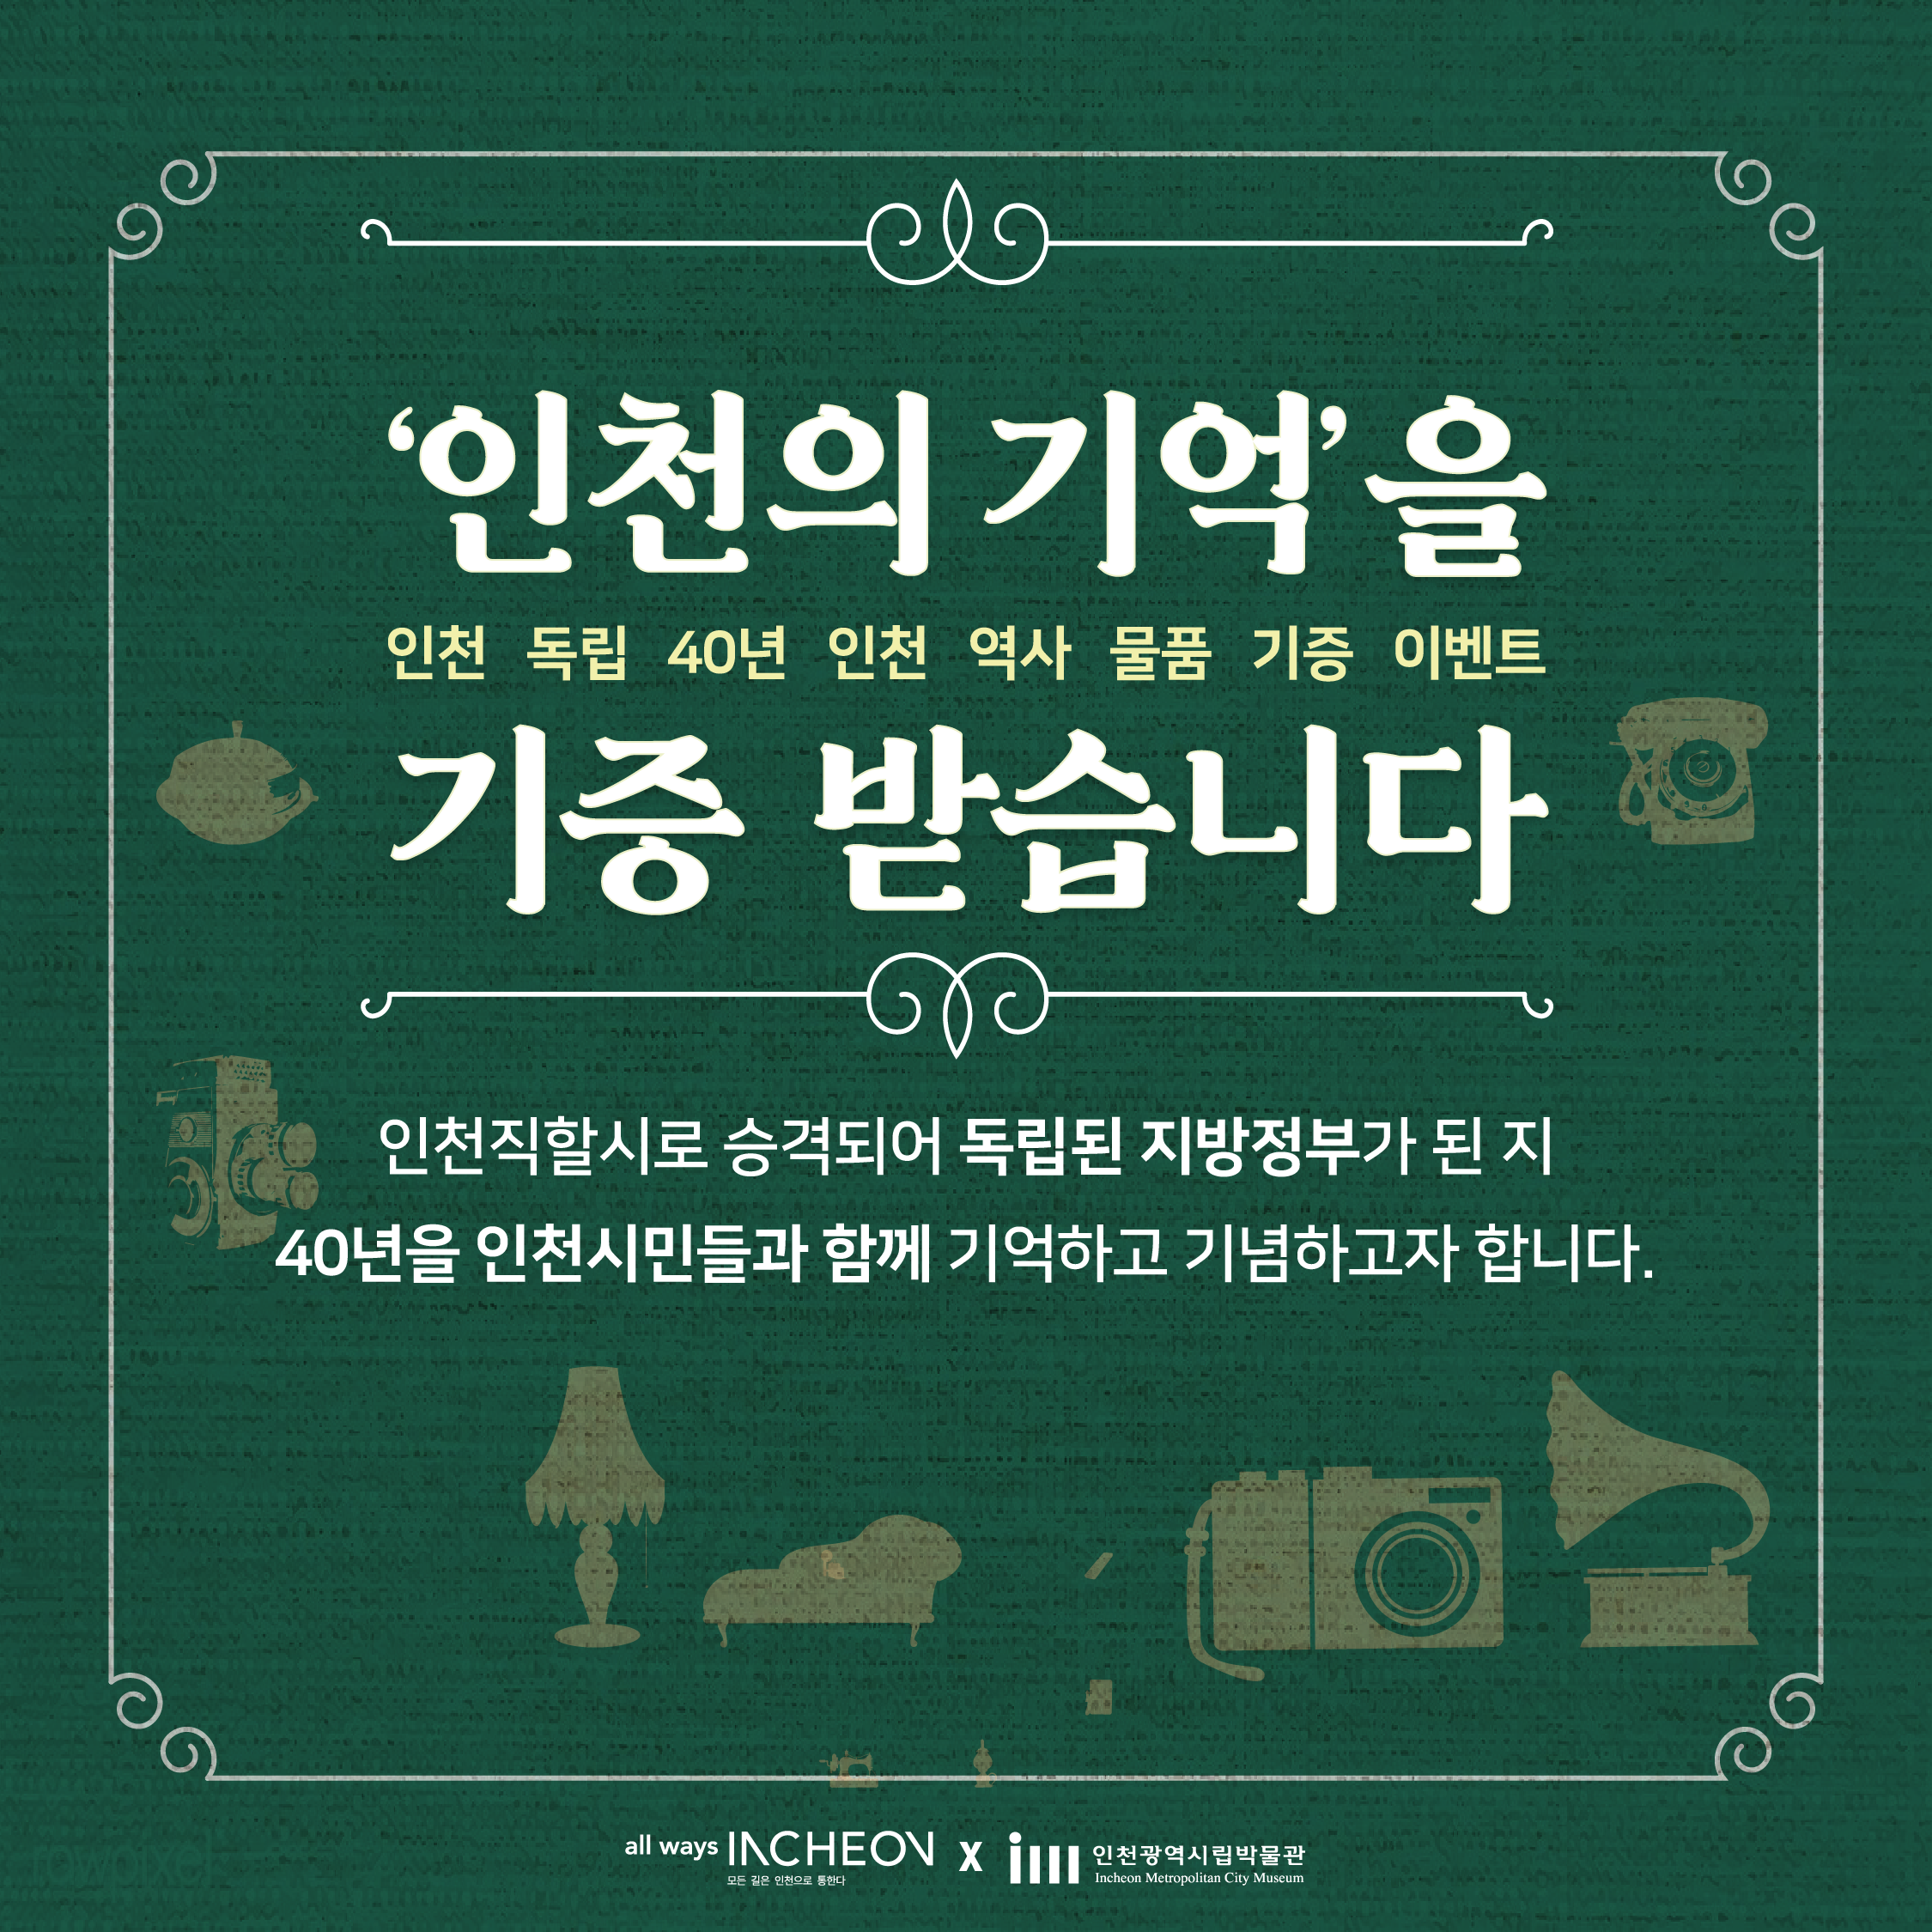 인천의 기억을 기증 받습니다. 
인천 독립 40년 인천 역사 물품 기증 이벤트
인천직할시로 승격되어 독립된 지방정부가 된 지 40년을 인천시민들과 함께 기억하고 기념하고자 합니다.